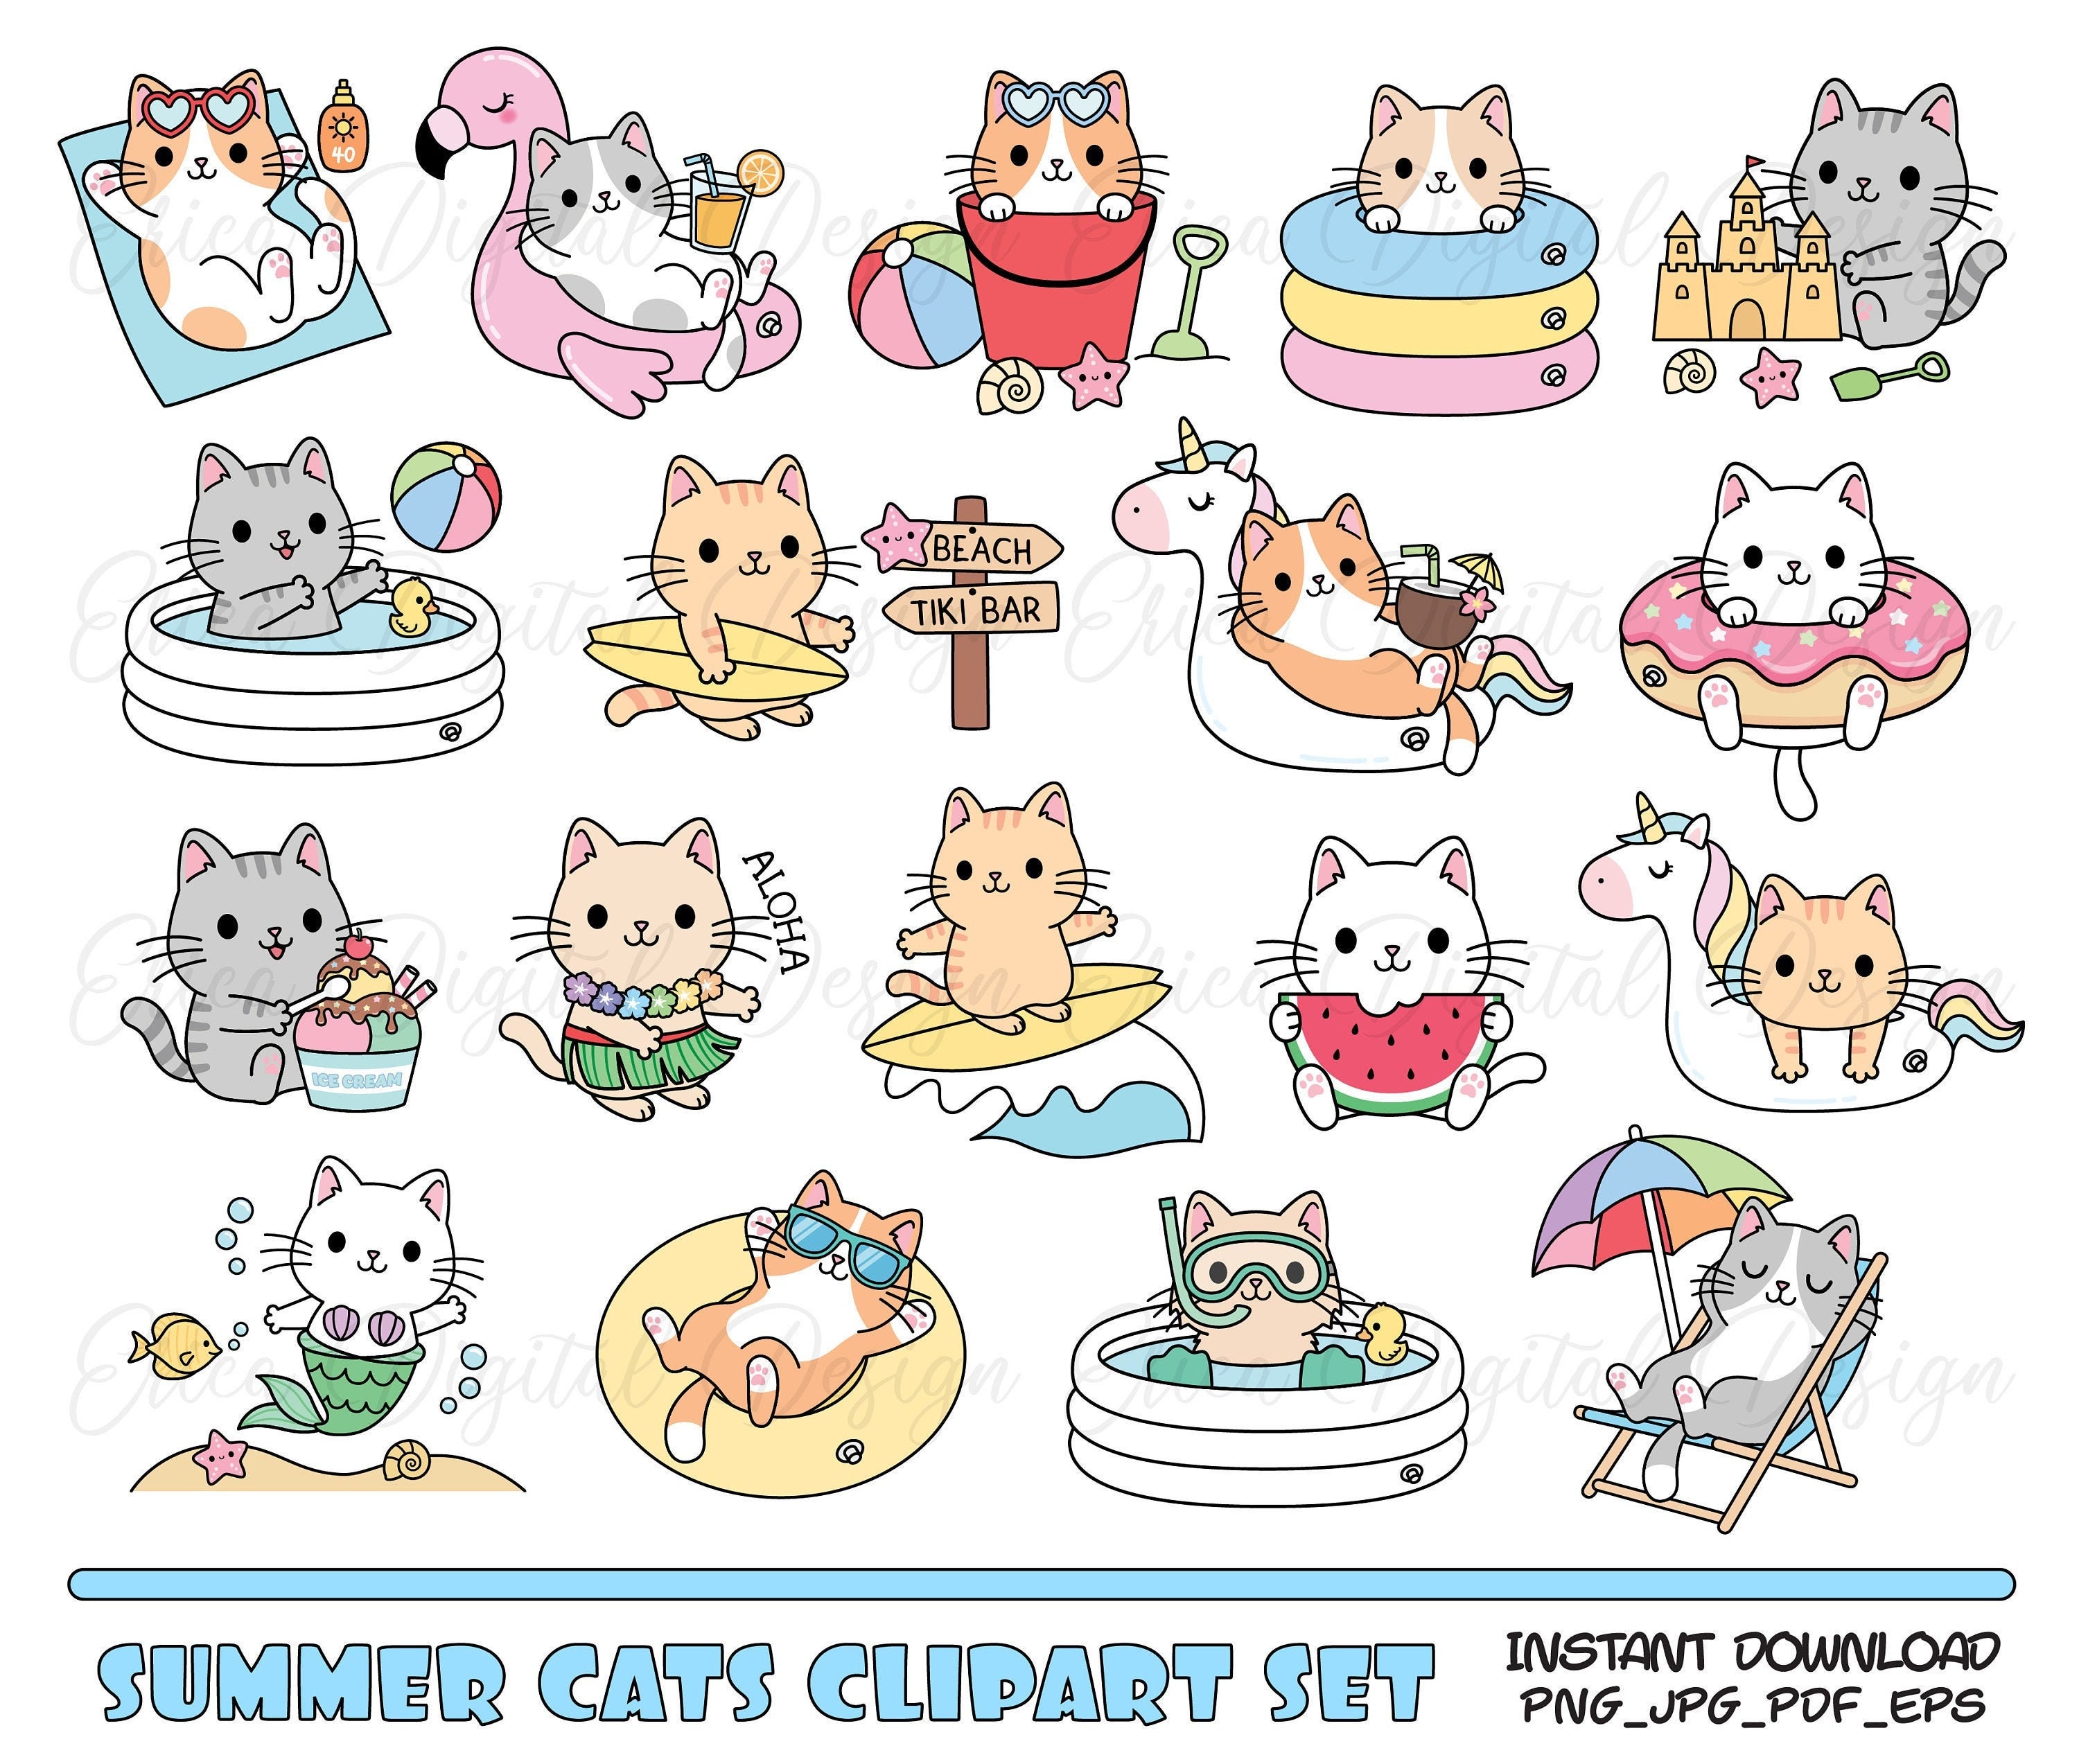 Fuzzy Tigers & Skunks Stickers by Funny Sticker World